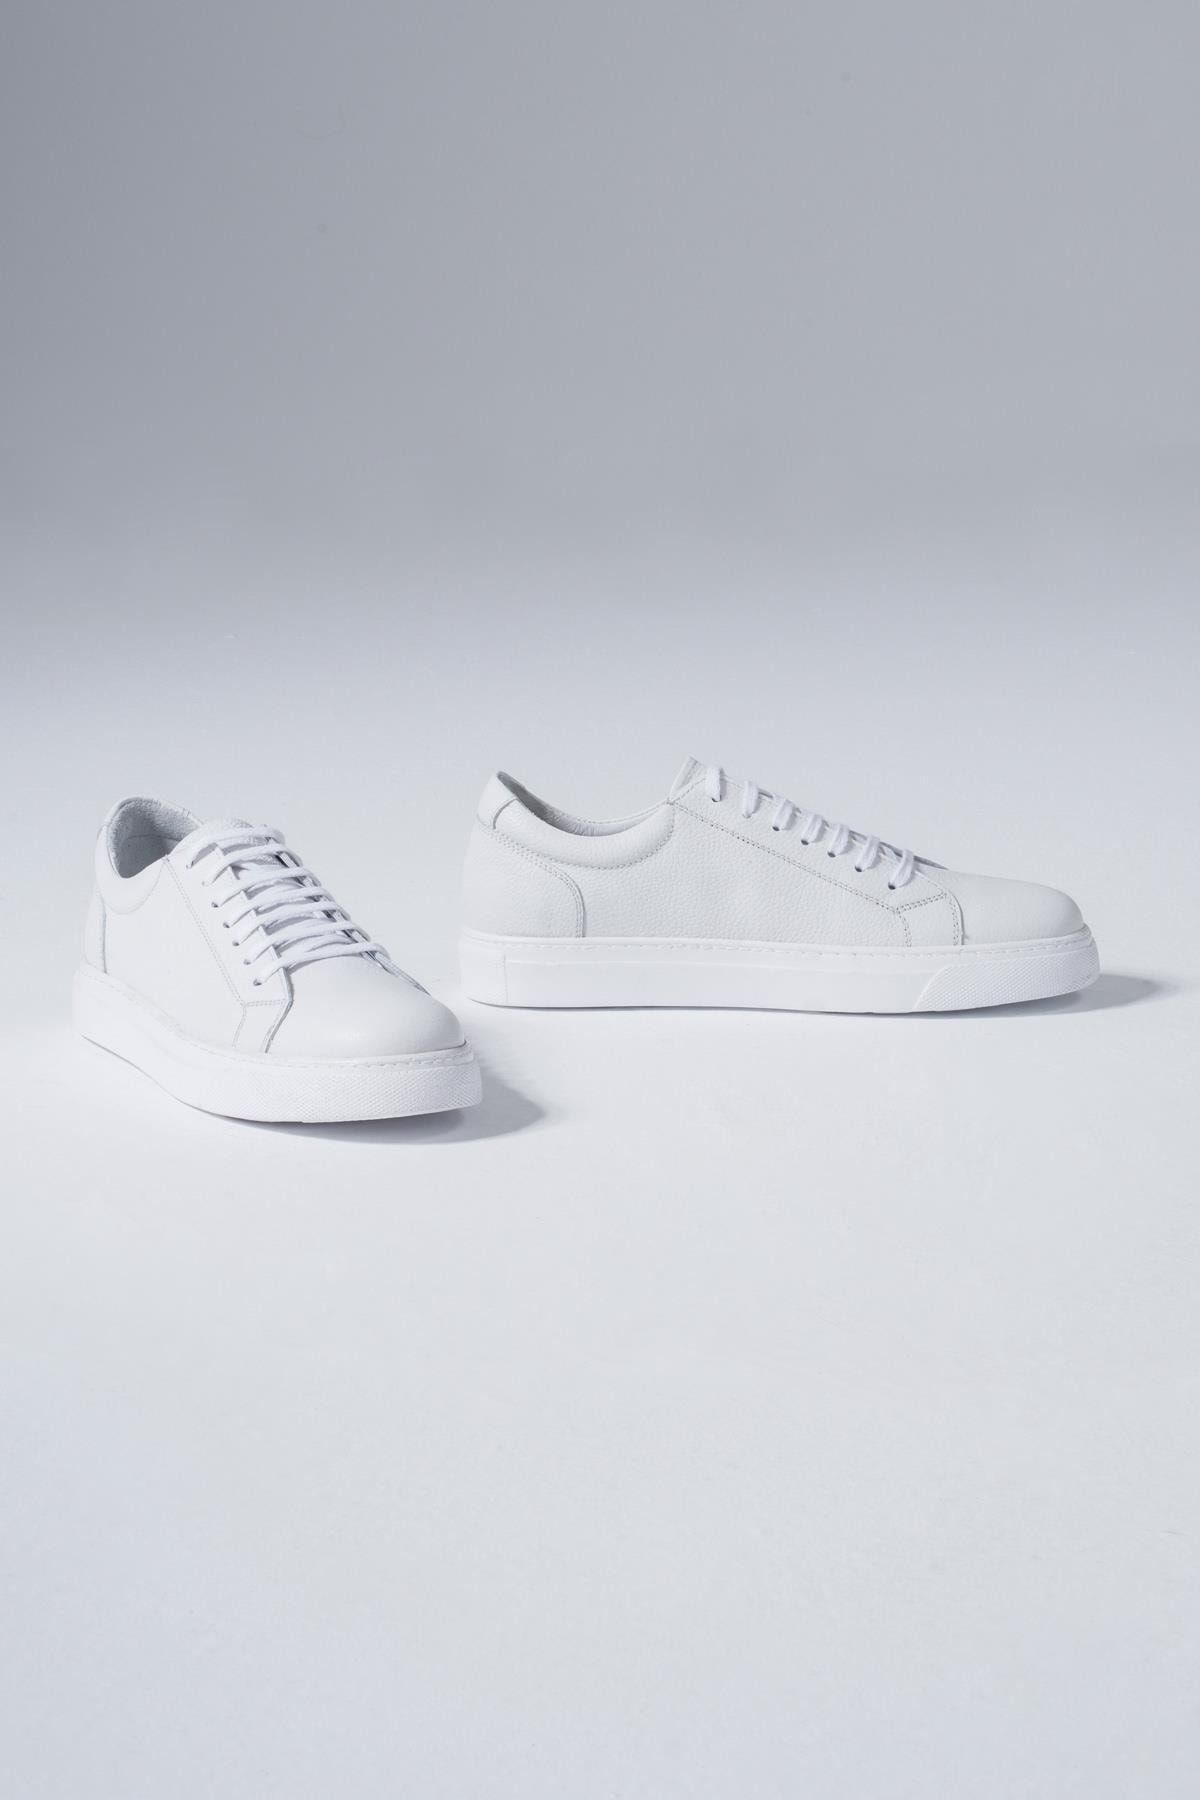 CZ London Beyaz - Hakiki Deri Erkek Günlük Spor Ayakkabı Casual Bağcıklı Sneaker